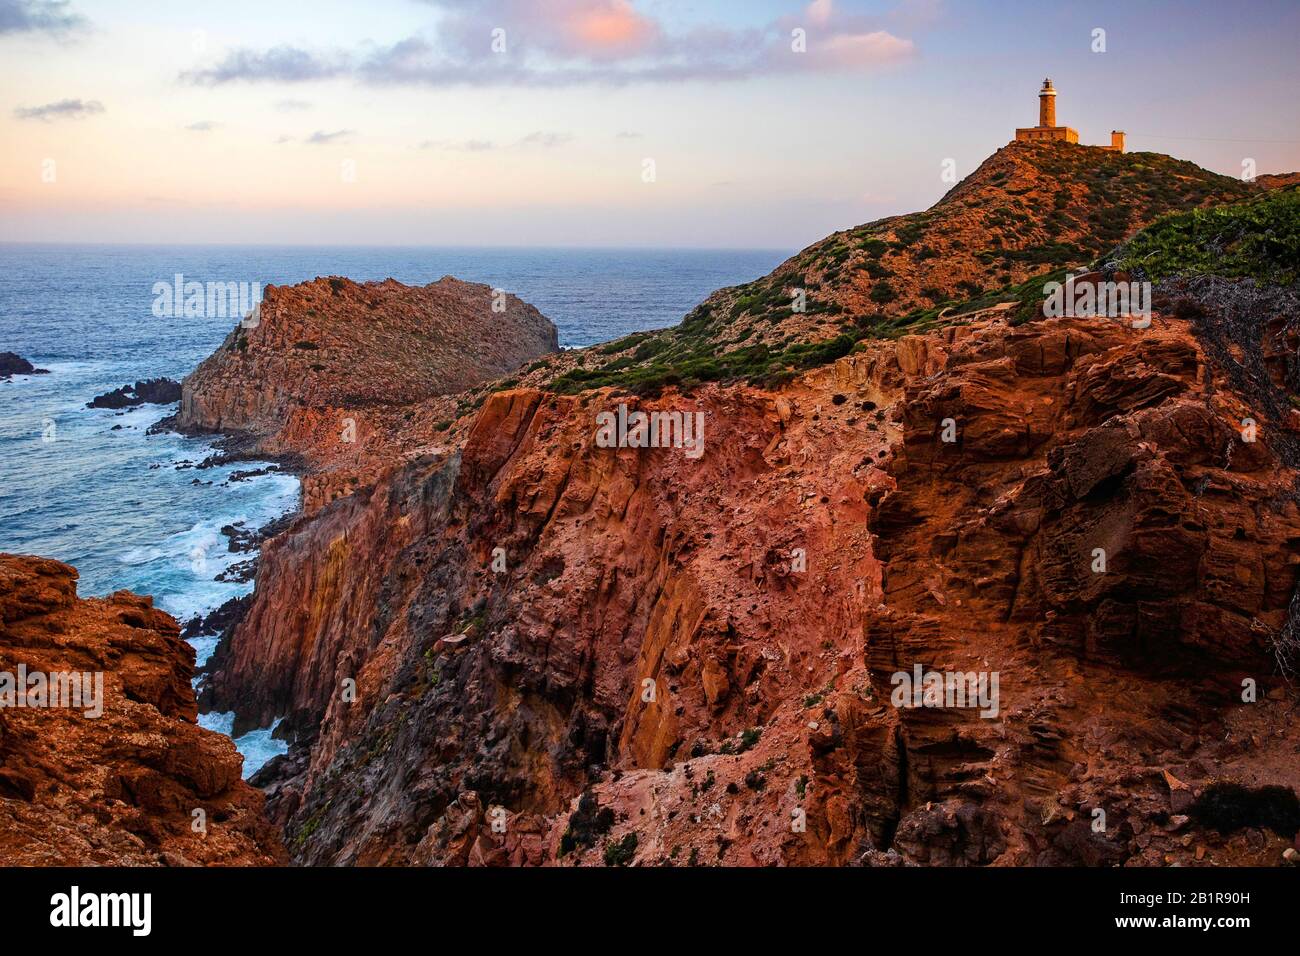 Faro di Capo Sandalo nel punto più occidentale dell'isola di San Pietro, Italia, Sardegna Foto Stock